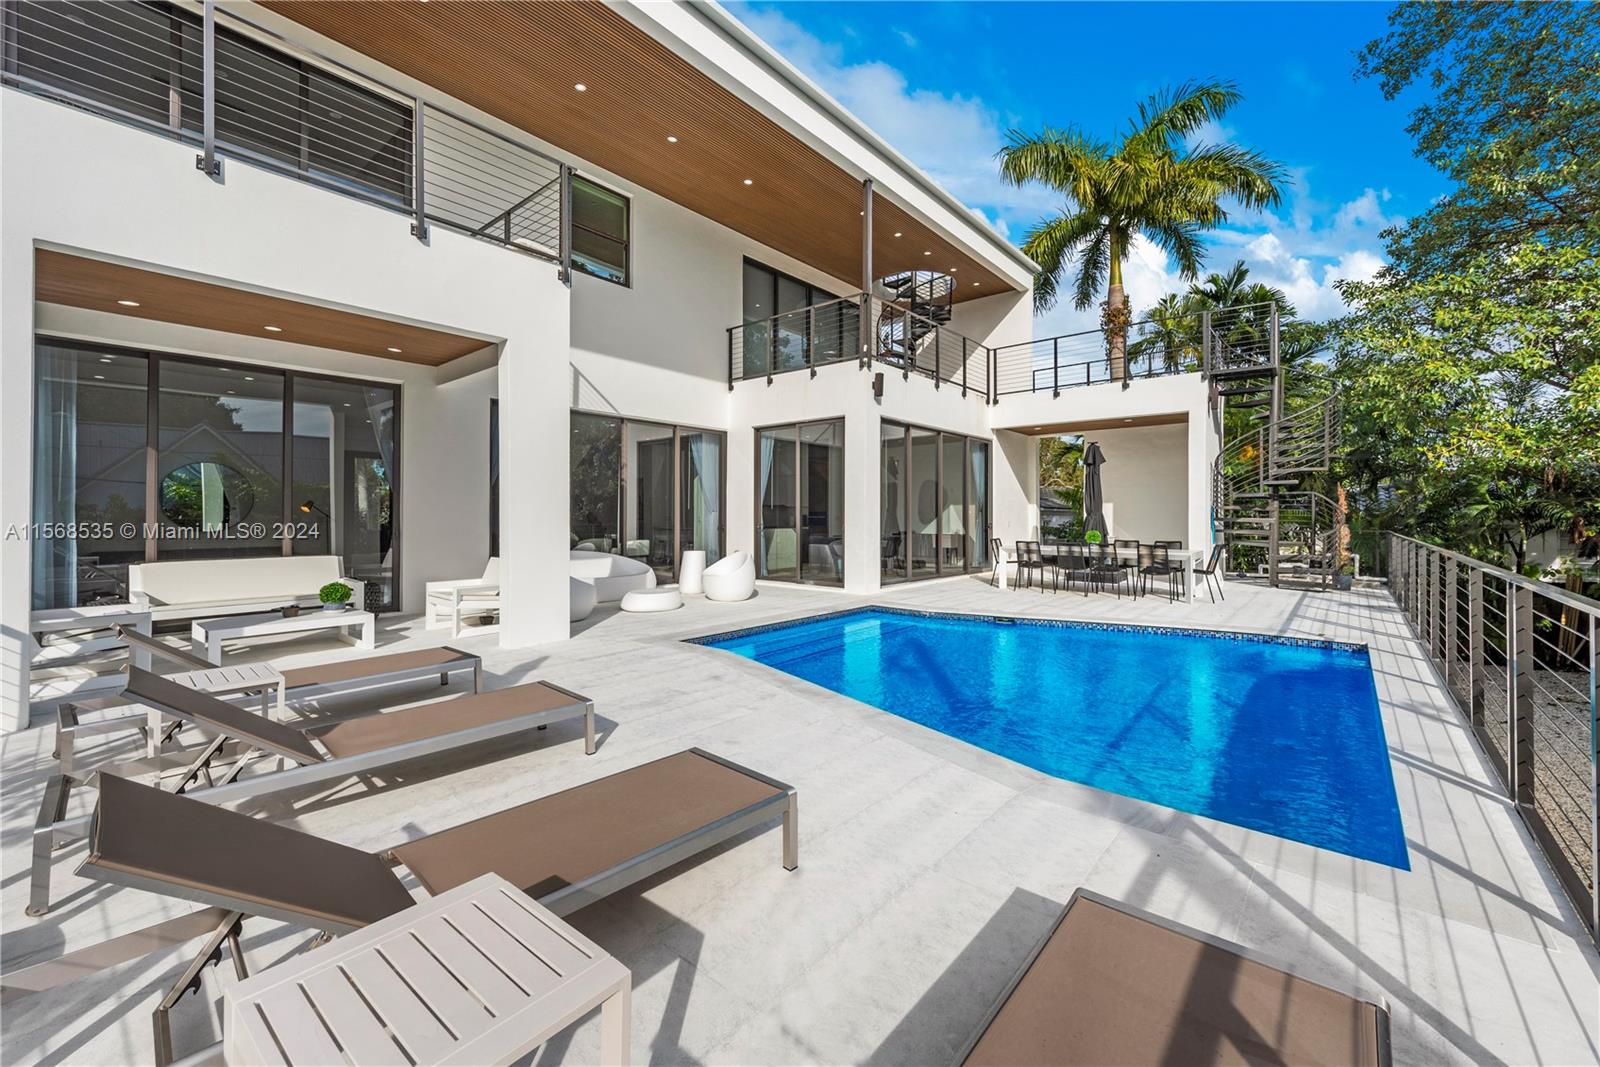 View Miami Shores, FL 33138 house